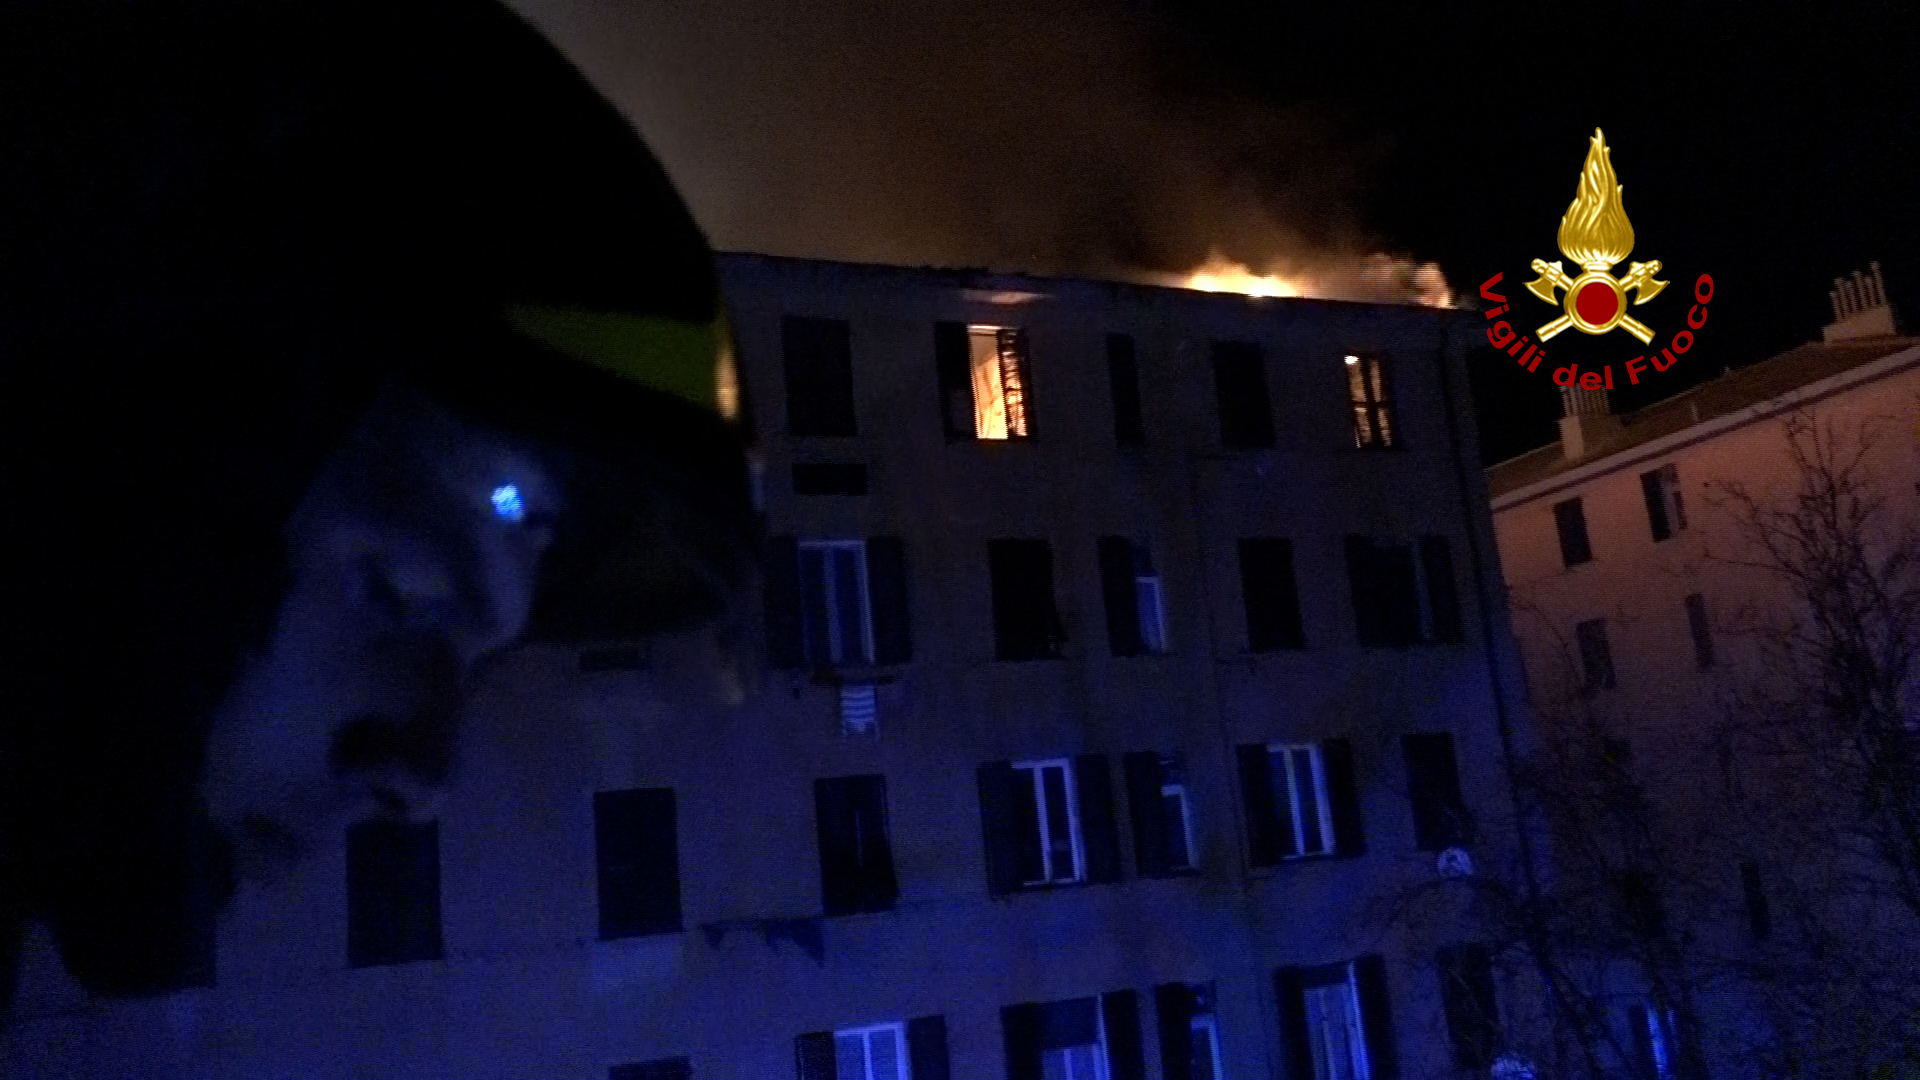 Incendio di via Piacenza a Genova, la denuncia di un residente: "Per rendere abitabile il condominio servono 150mila euro"